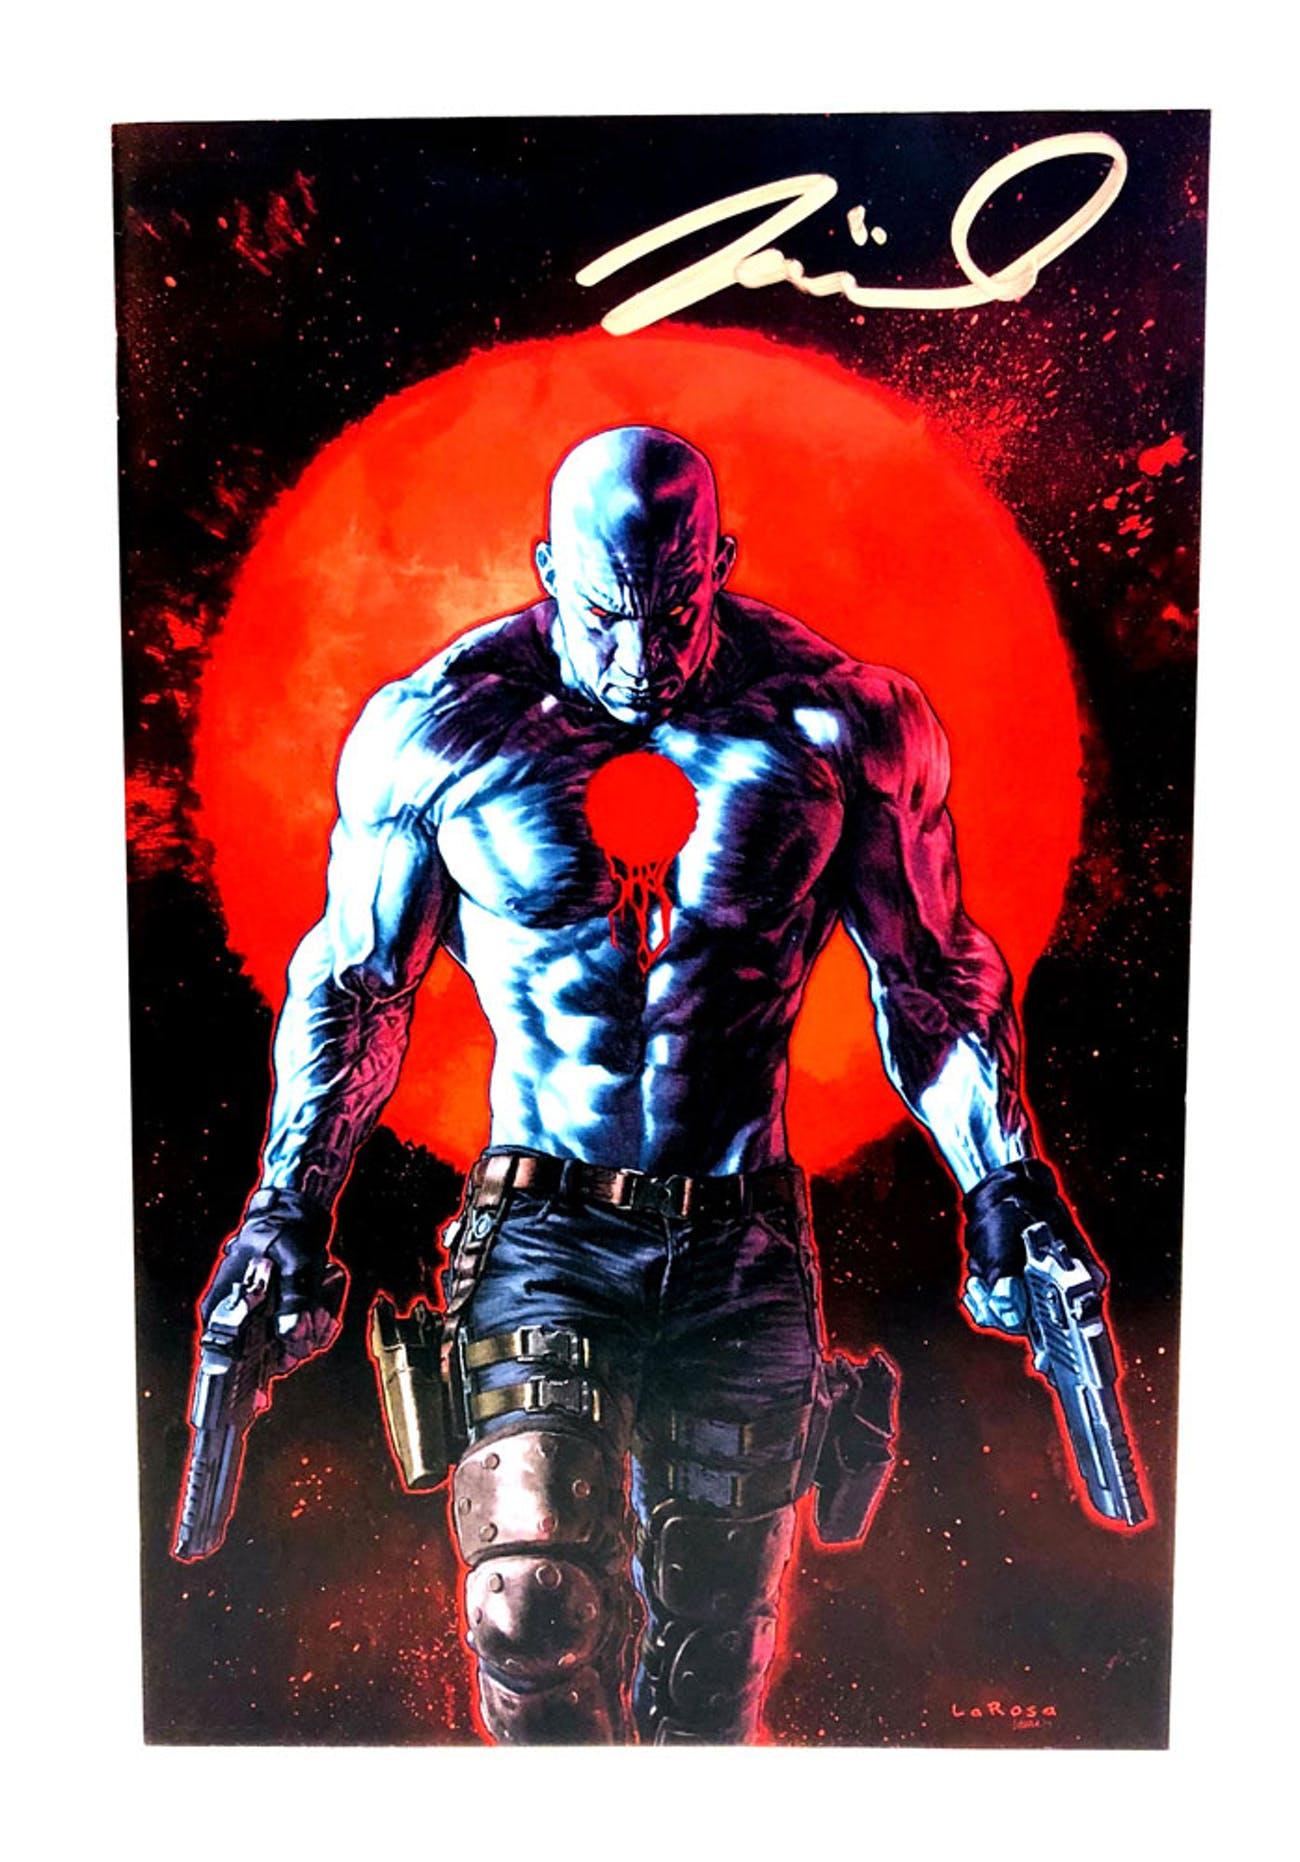 Vin Diesel In Bloodshot Wallpapers